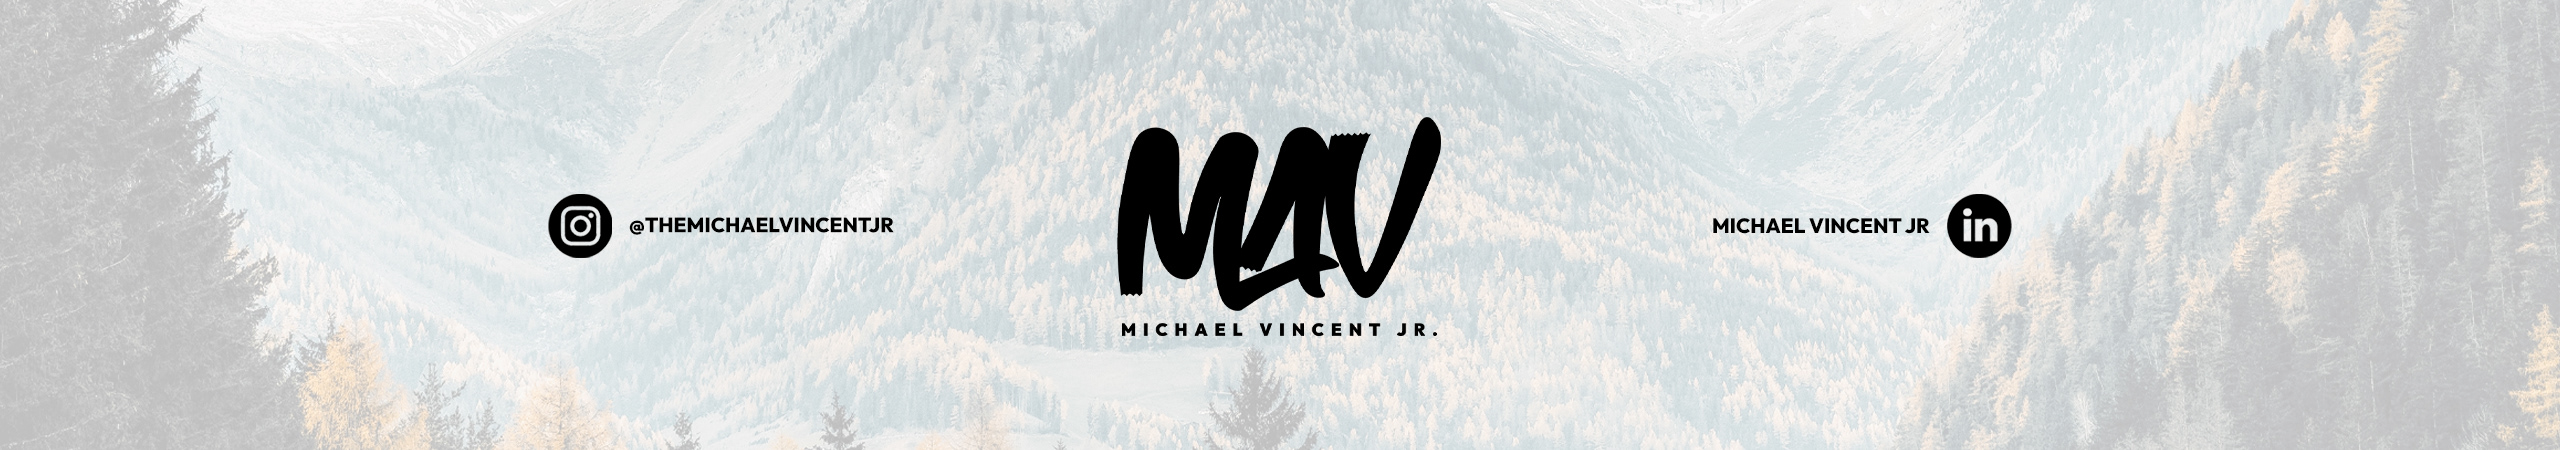 Michael Vincent Jr.'s profile banner